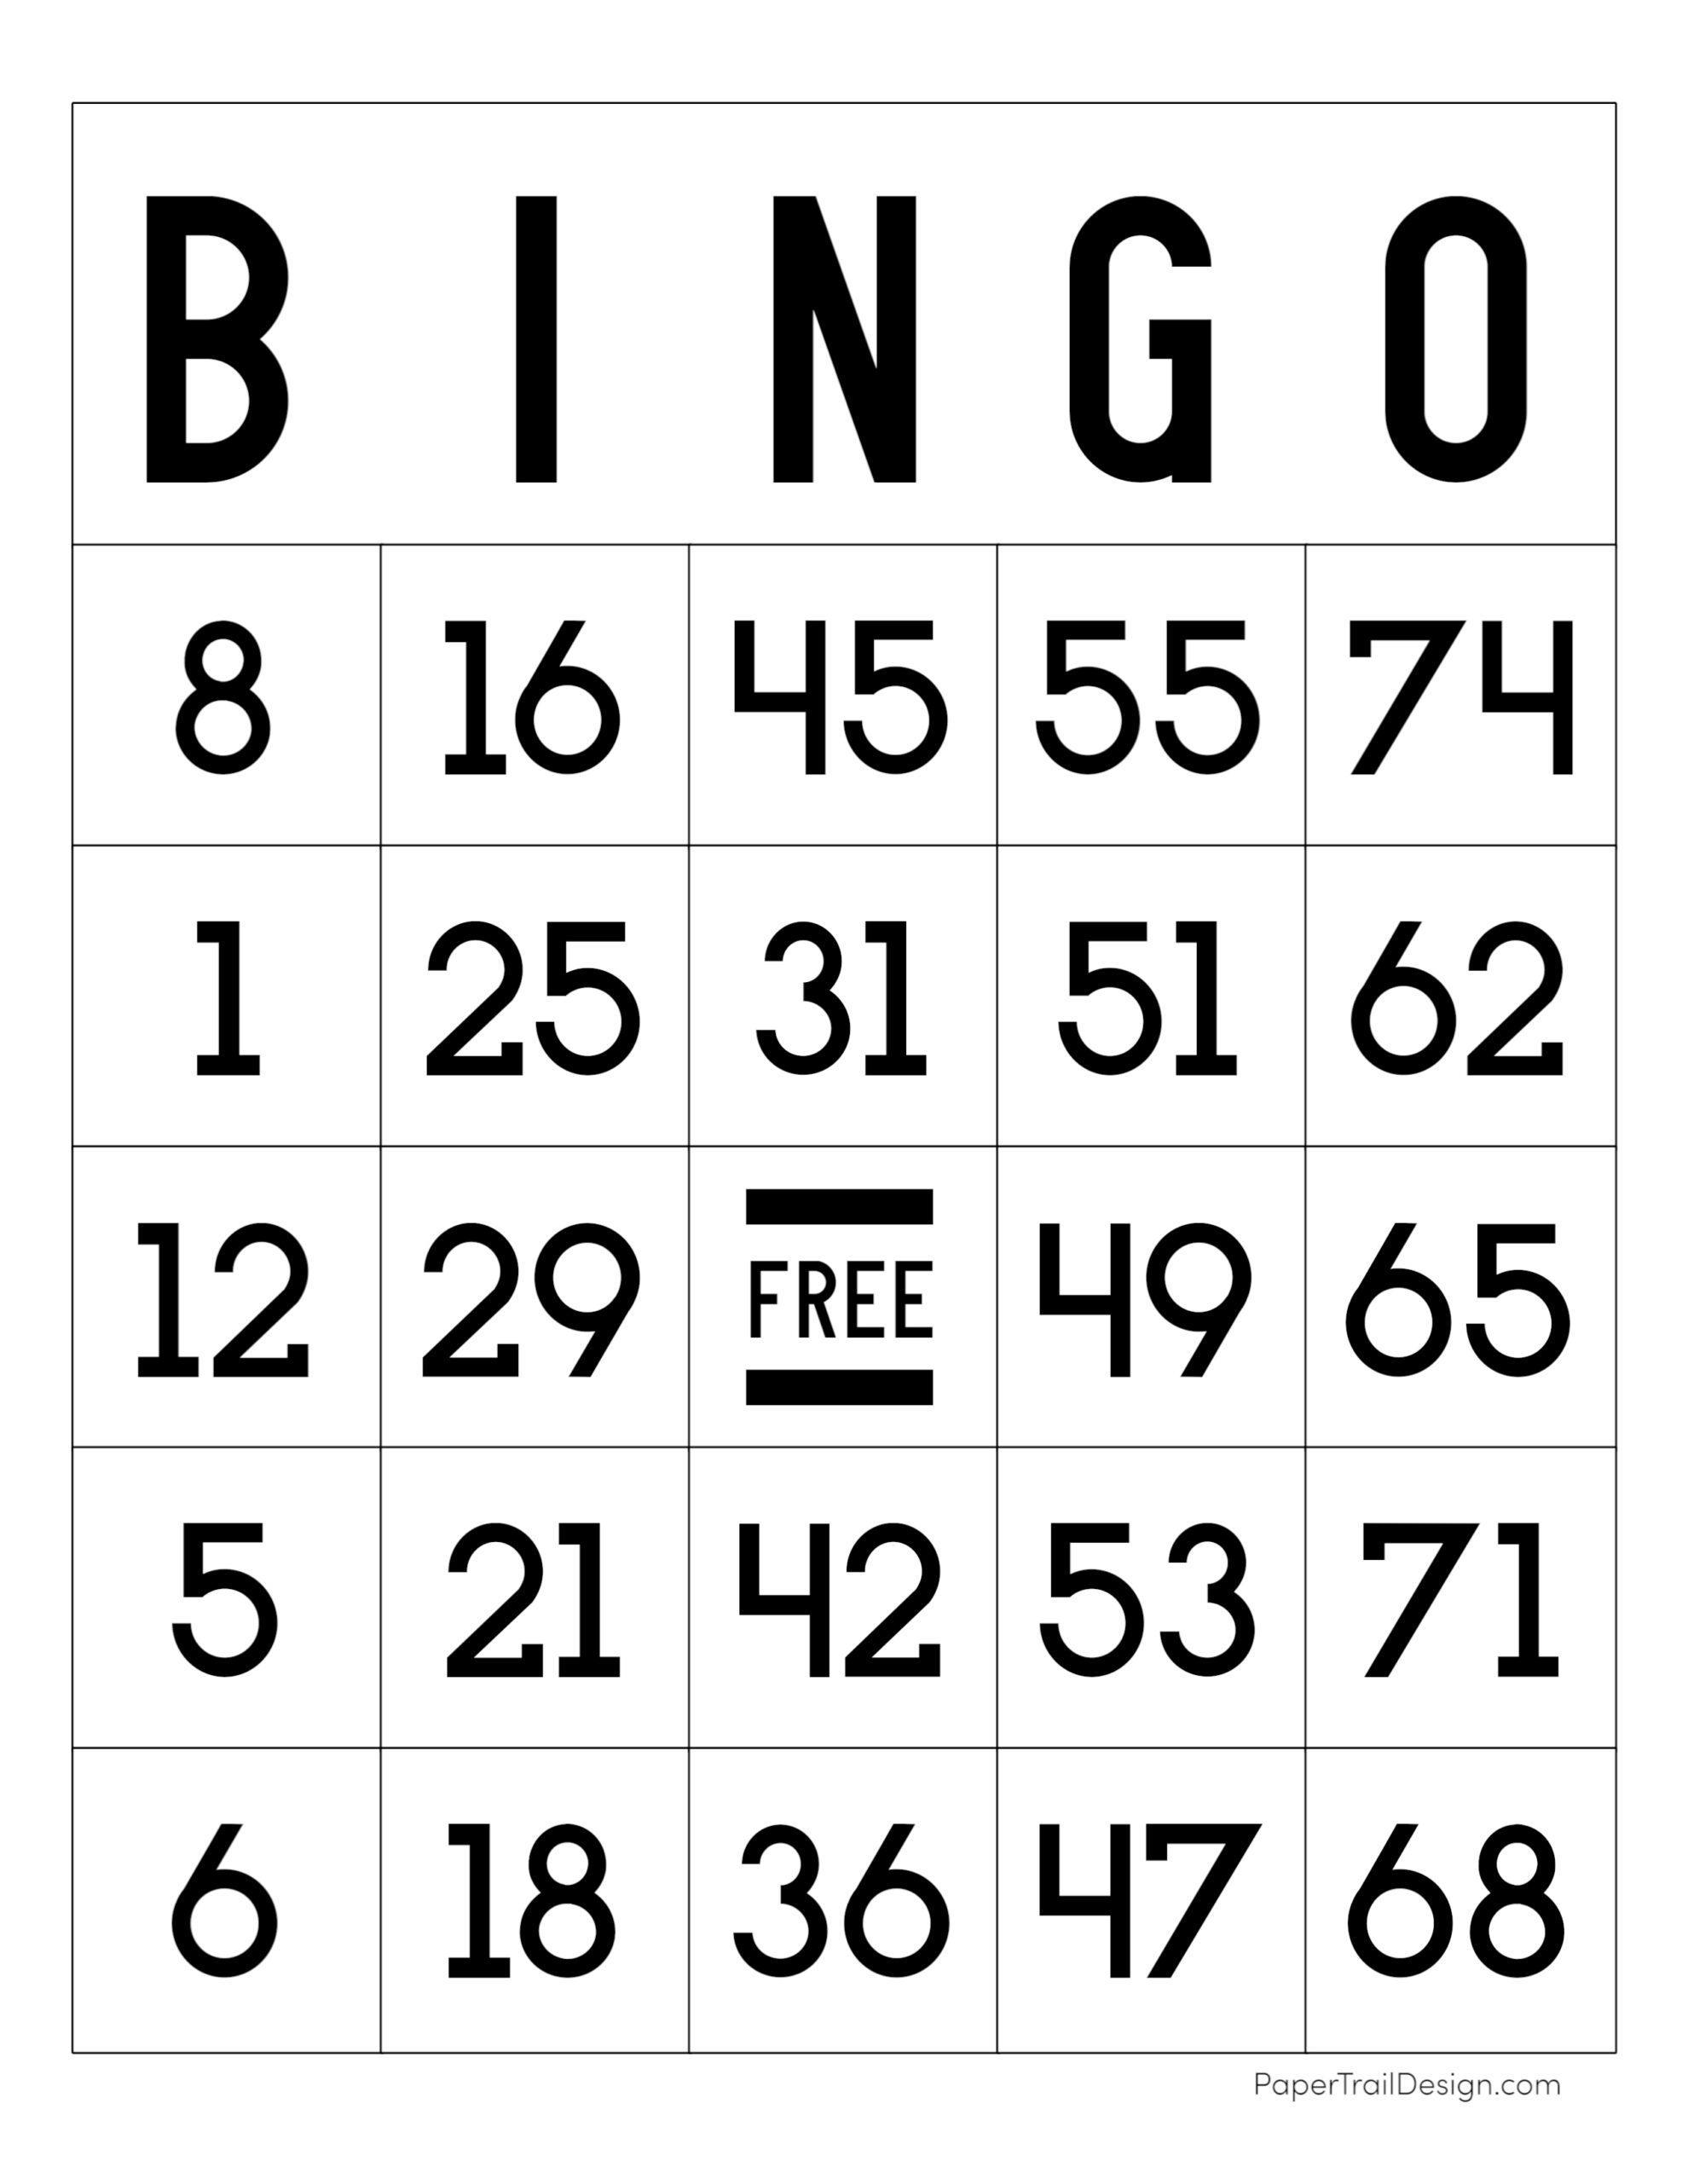 bingo game template free